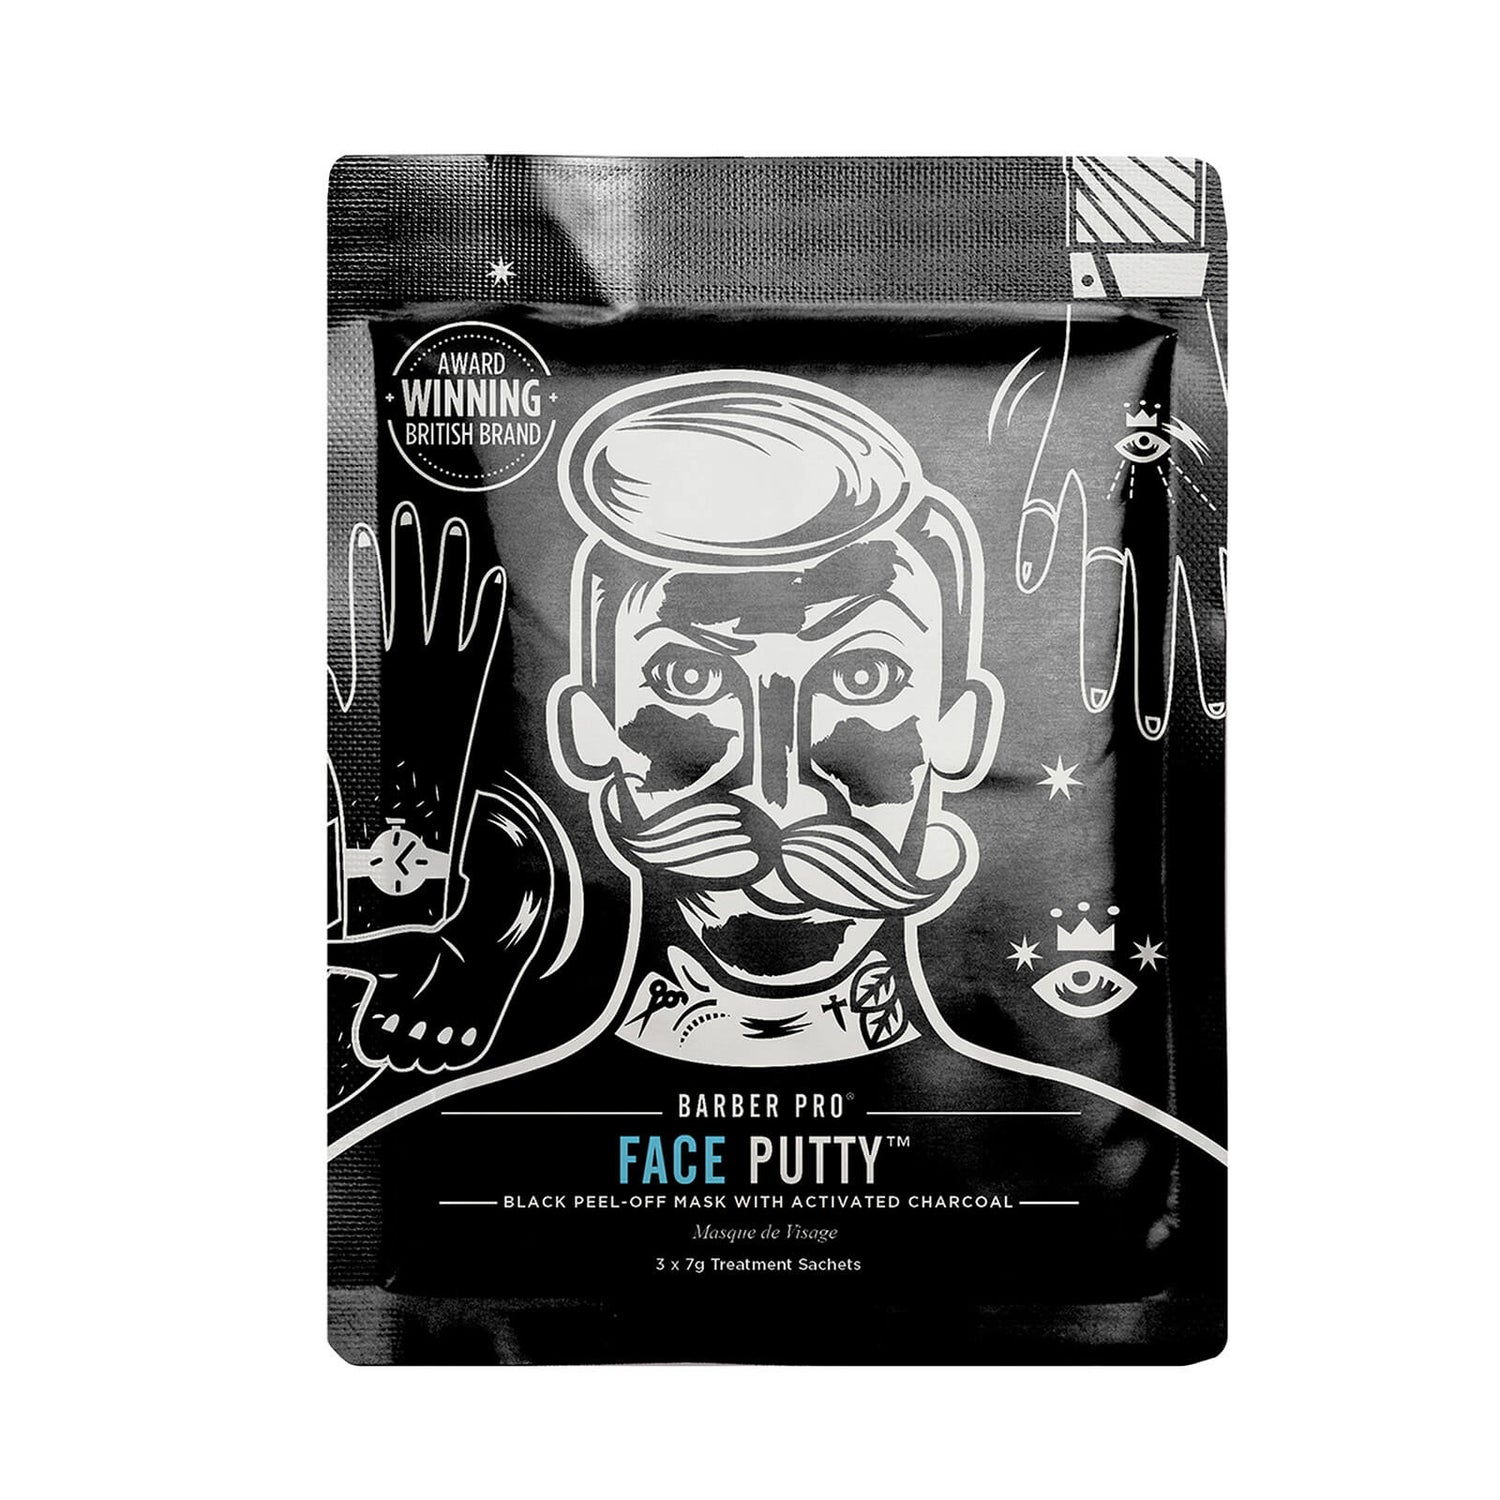 BARBER PRO Face Putty Black Peel-Off Mask with Activated Charcoal (til 3 påføringer)